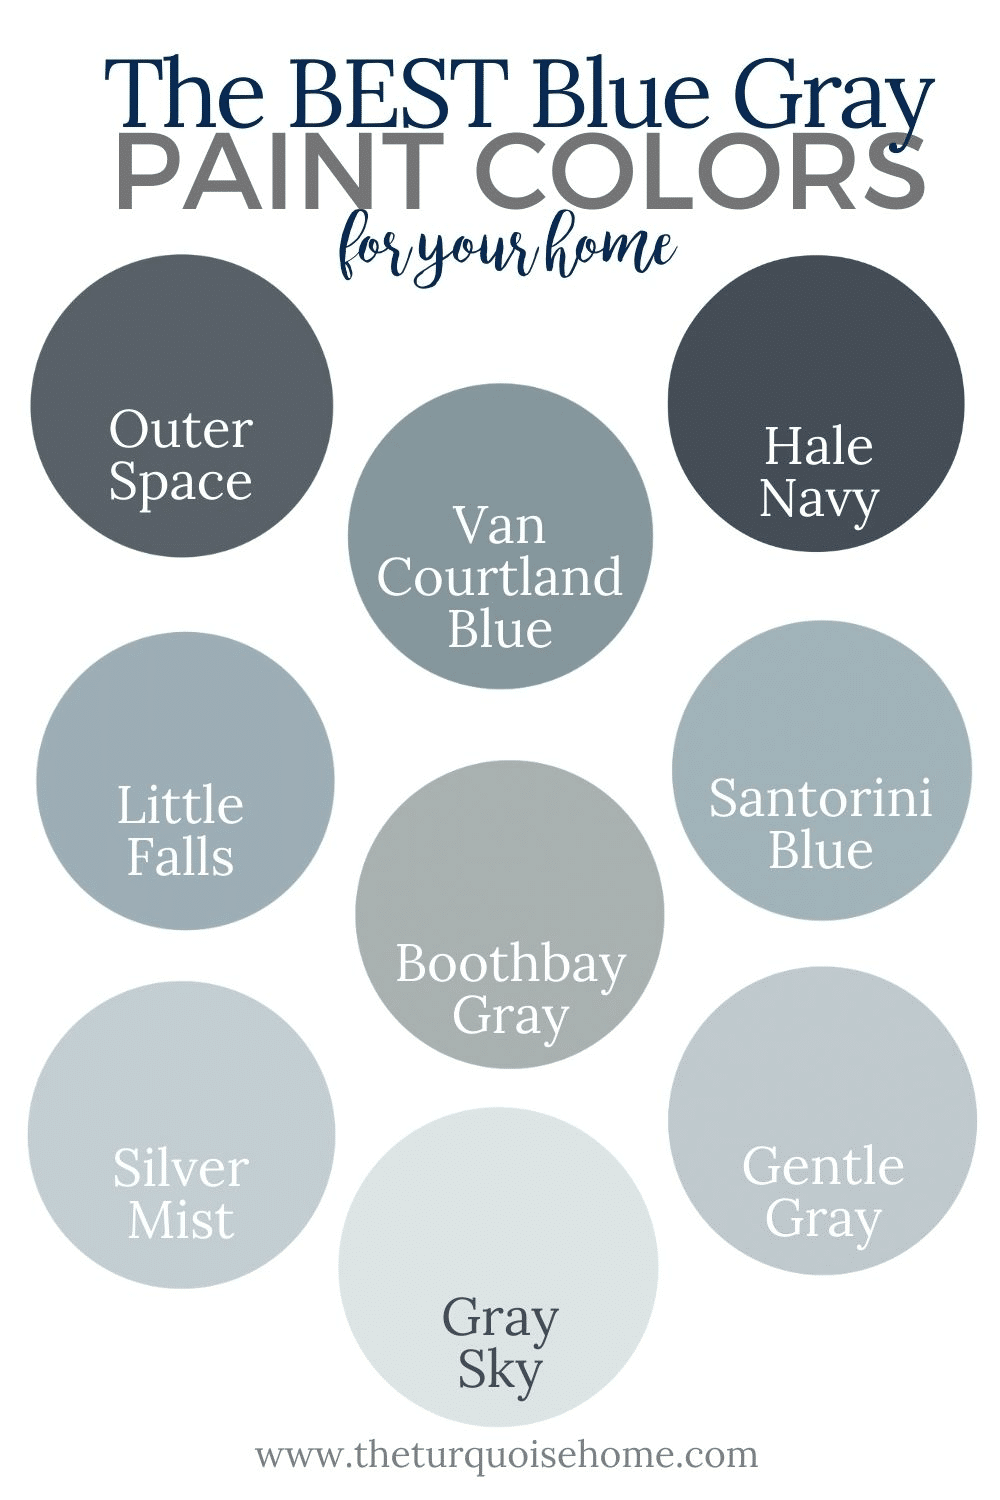 The Best Blue Gray Paint Colors